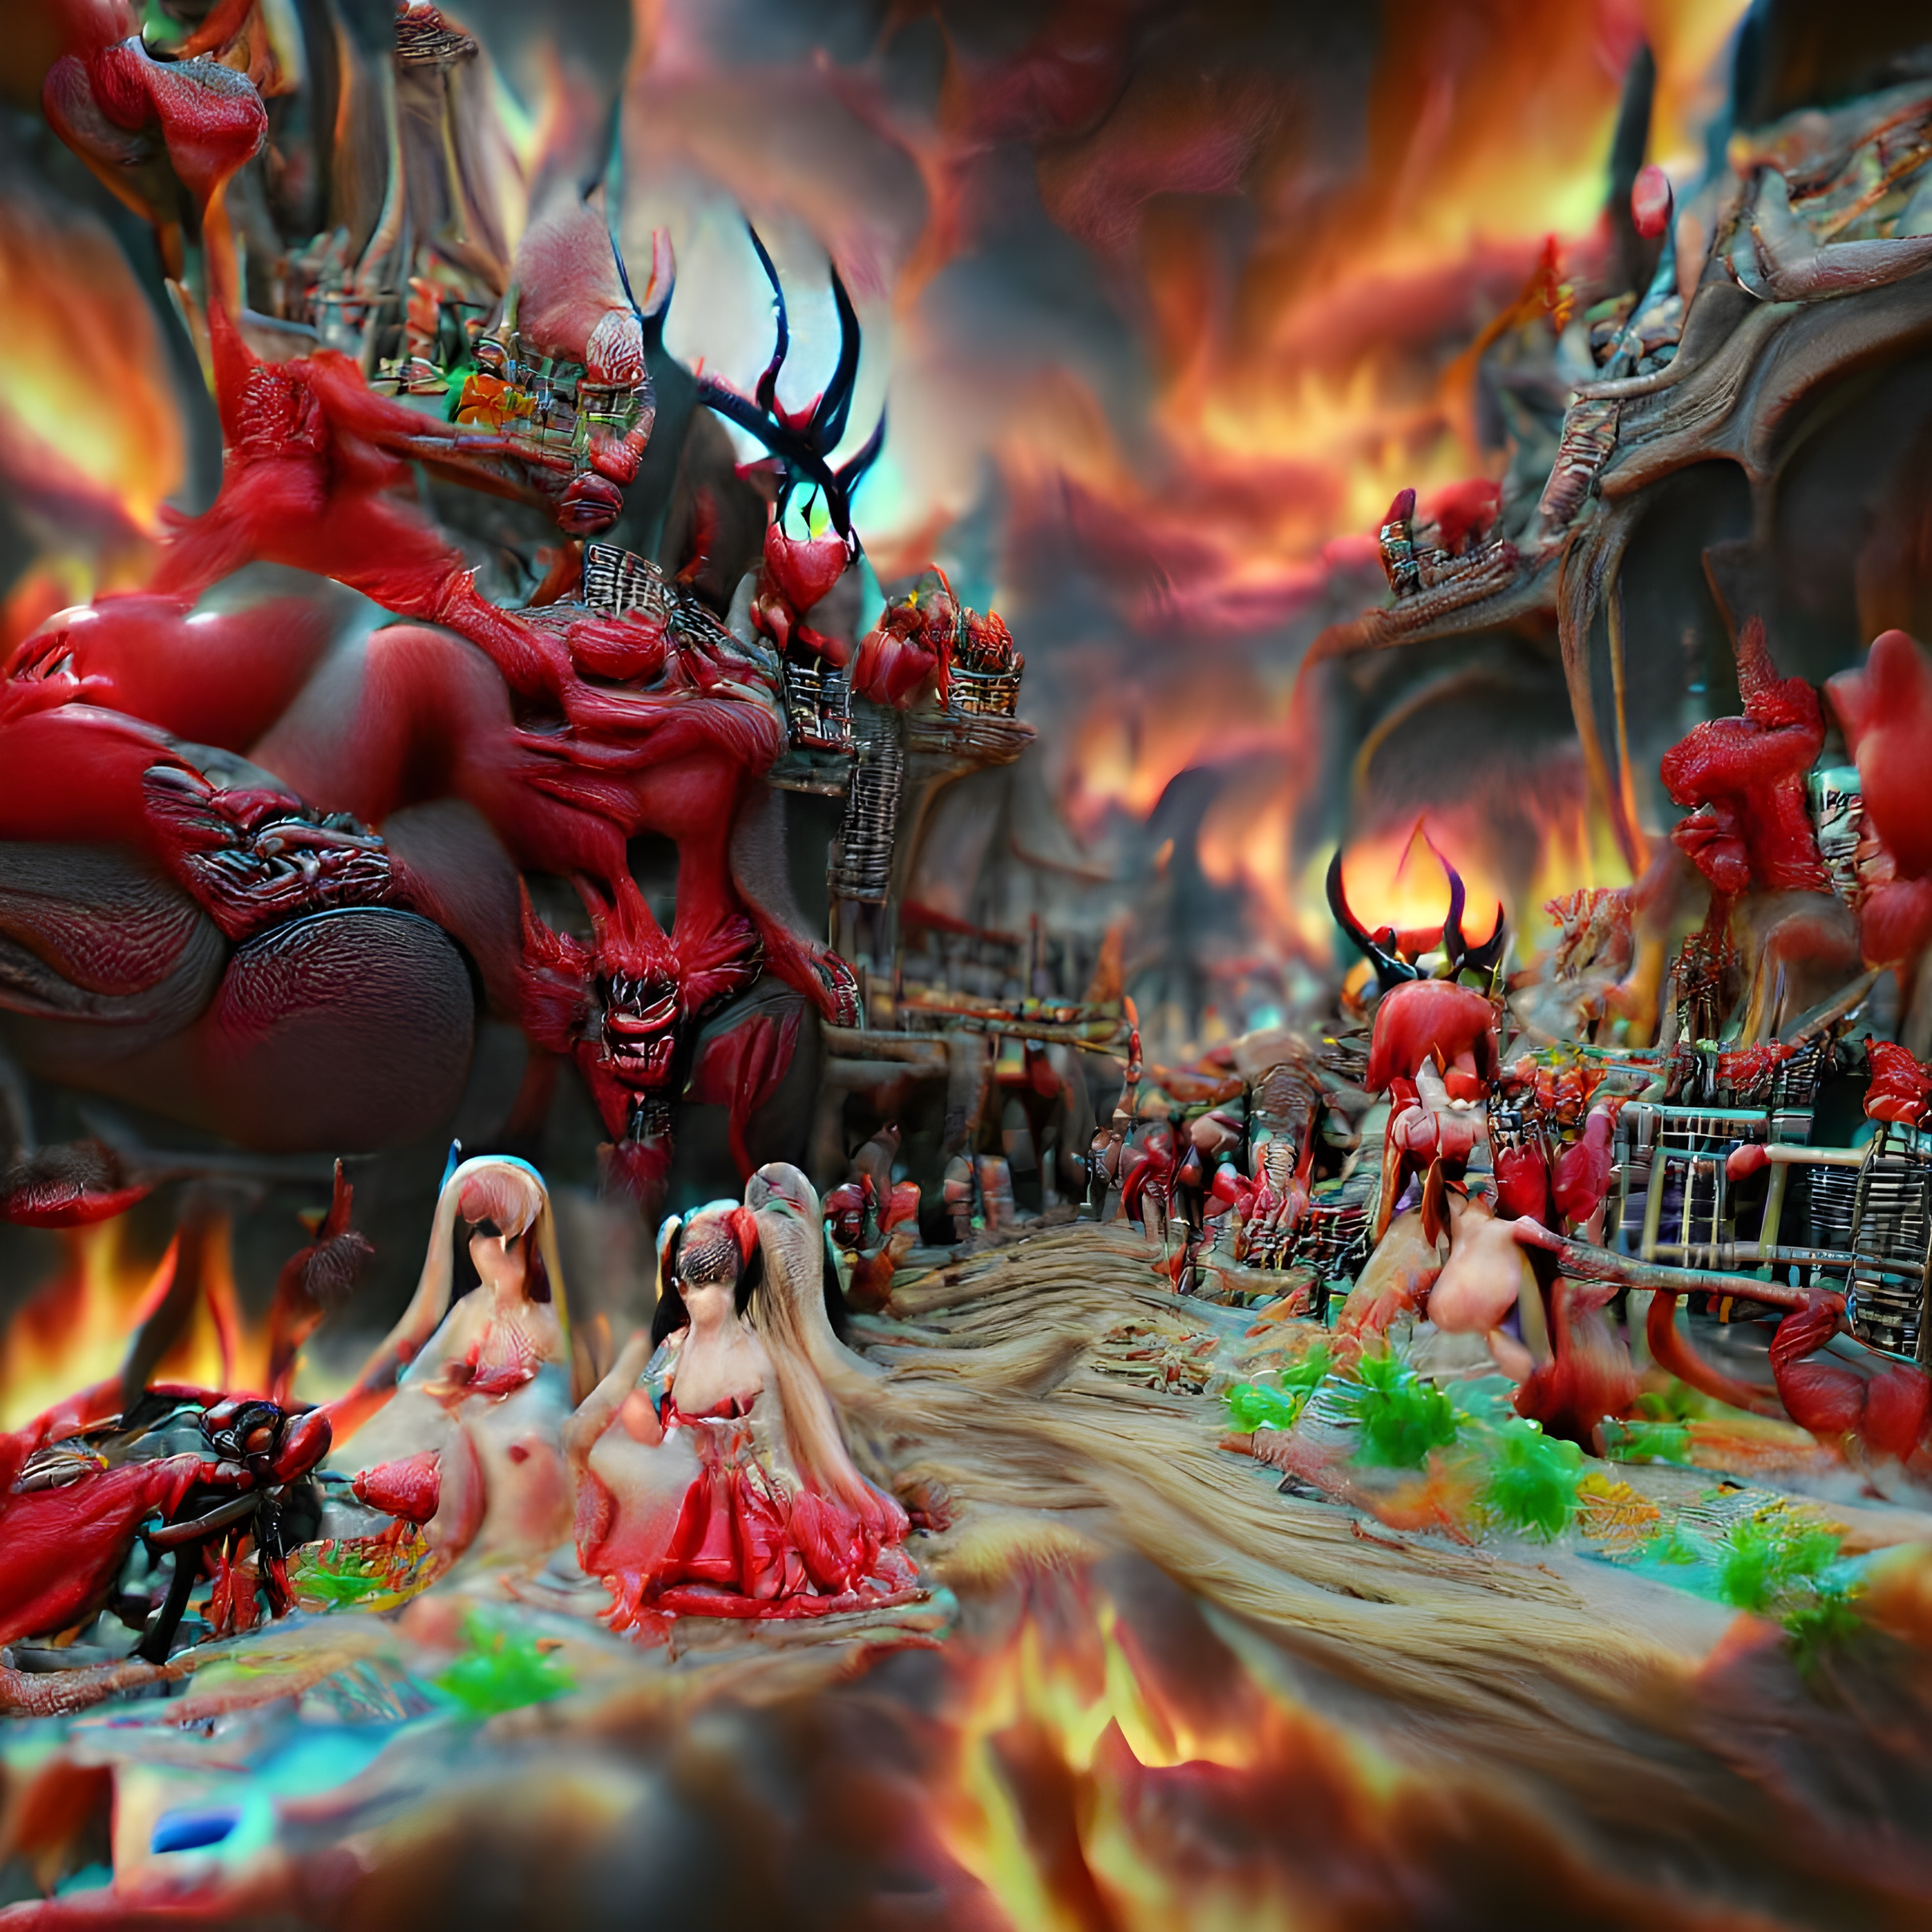 Beauty in Hell #2